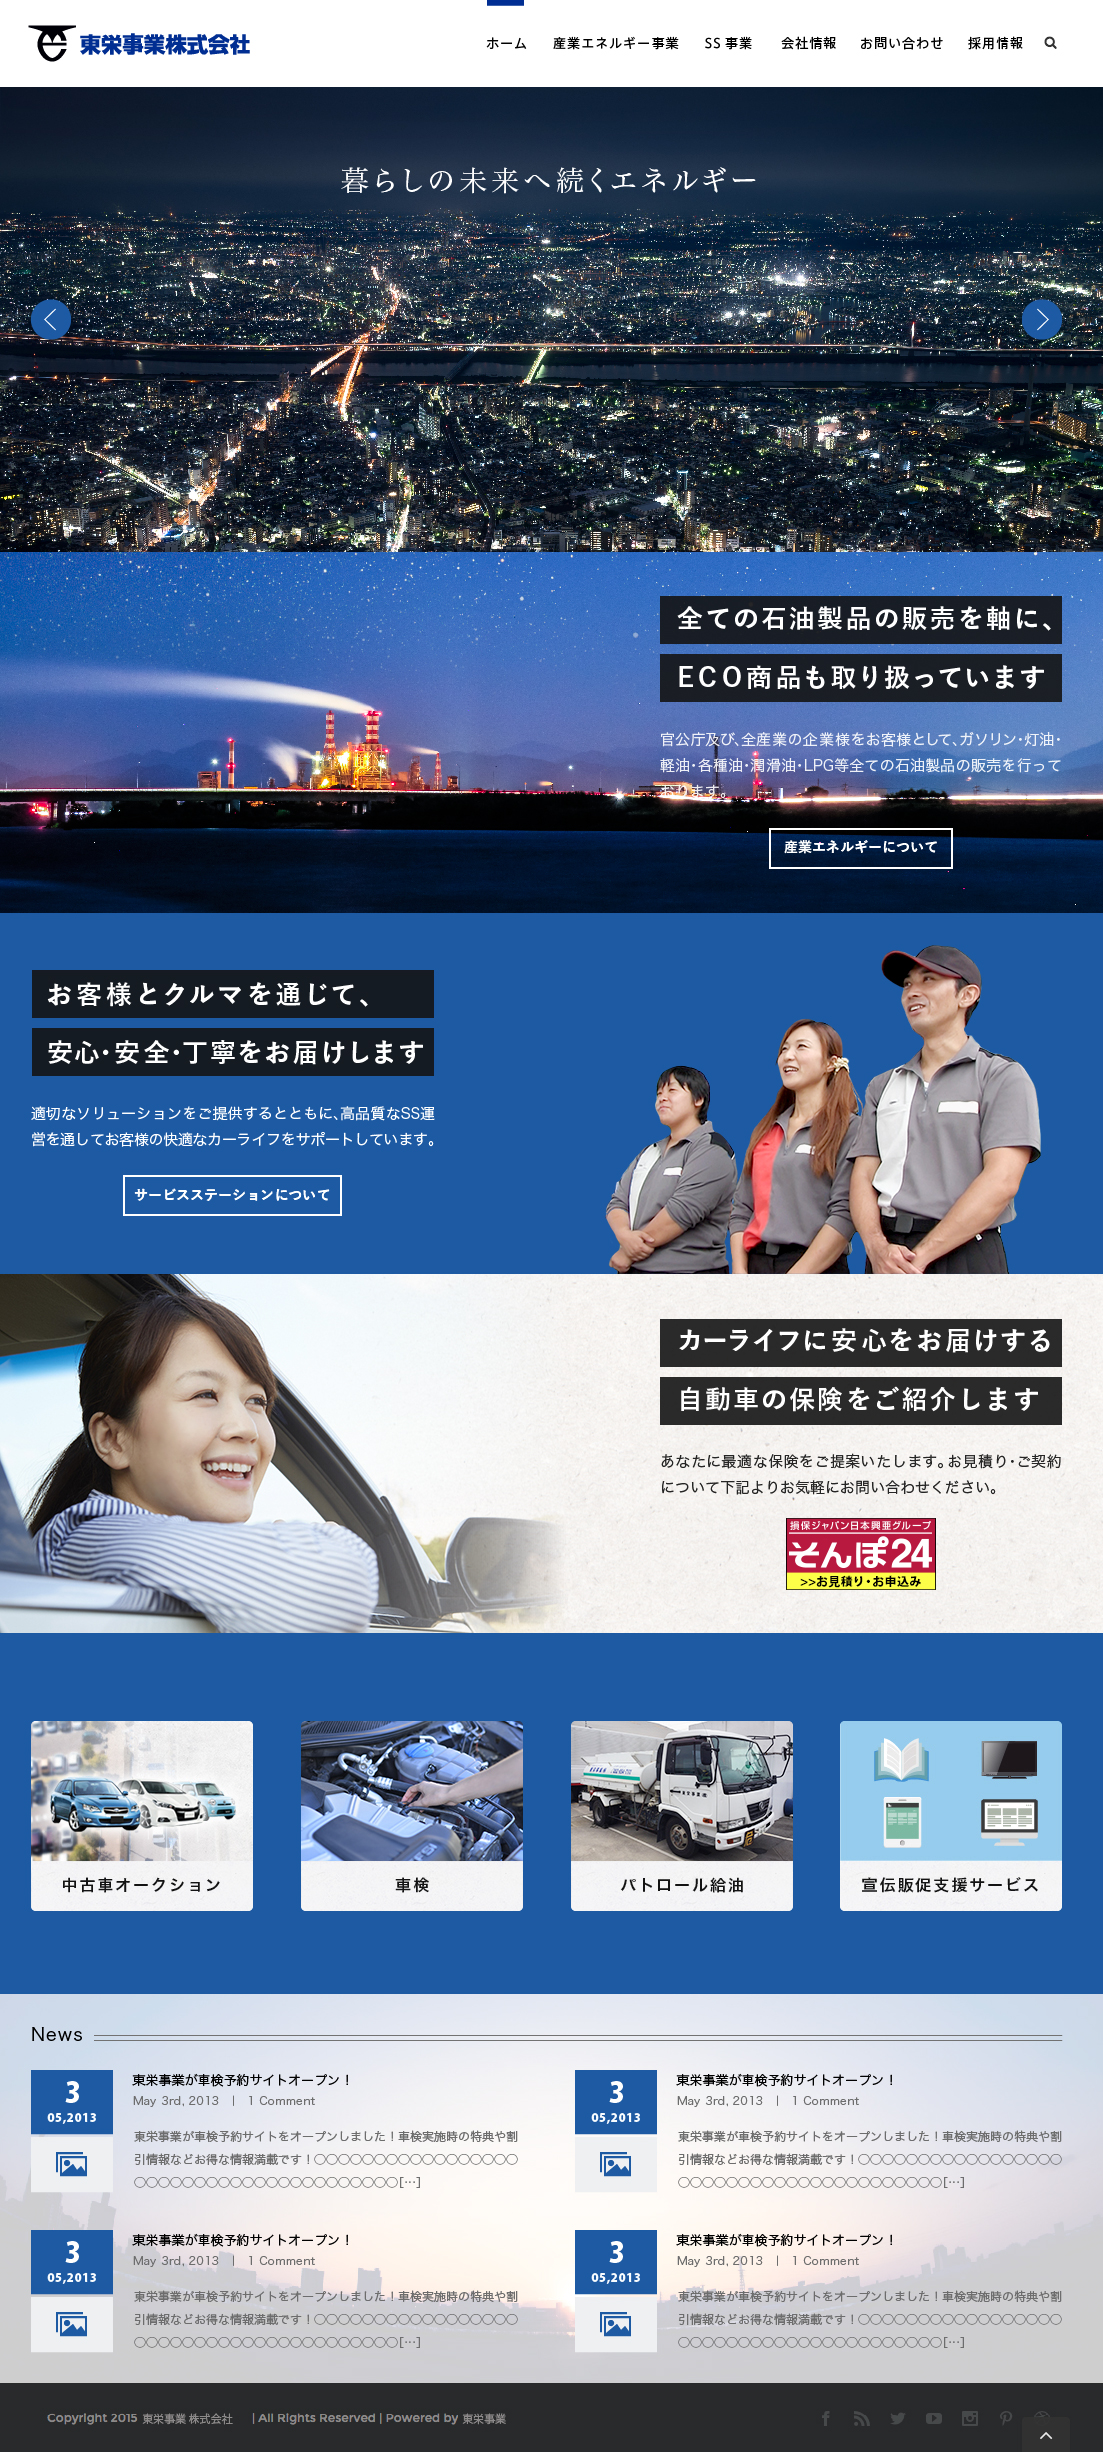 東栄事業株式会社 オフィシャルサイト